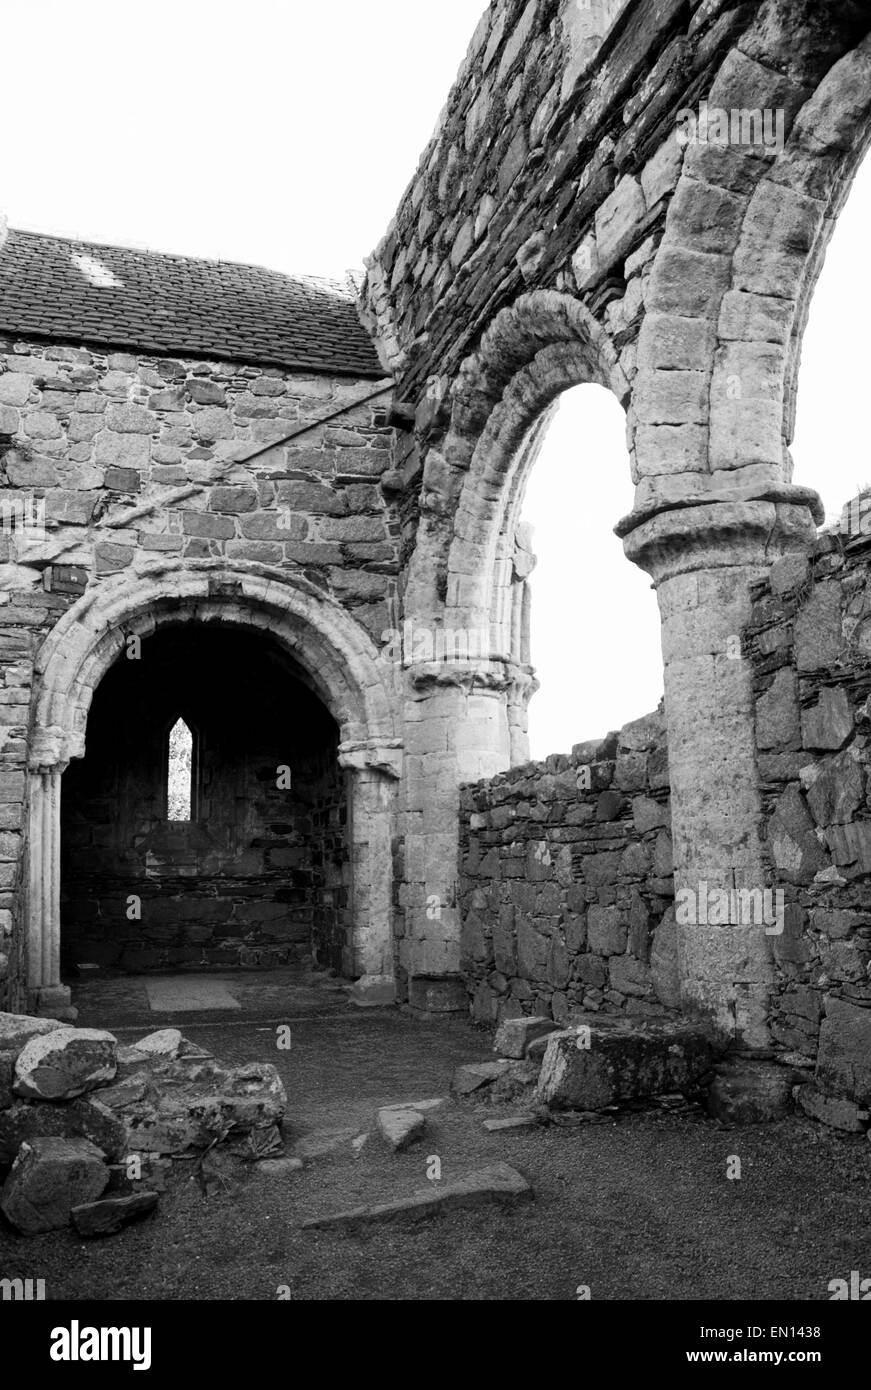 Les ruines d'un couvent sur l'île d'Iona, Ecosse Banque D'Images